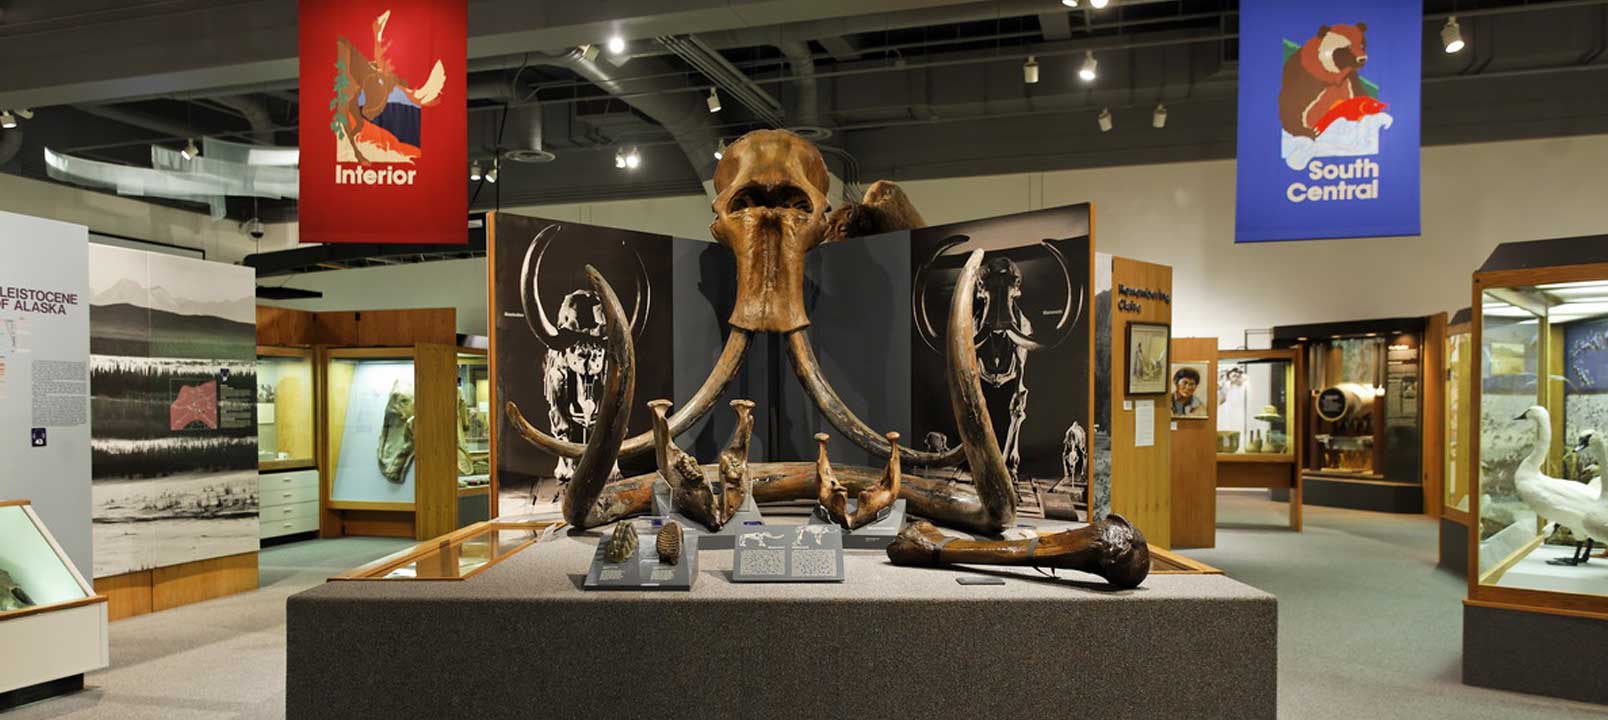 Mammoth exhibit